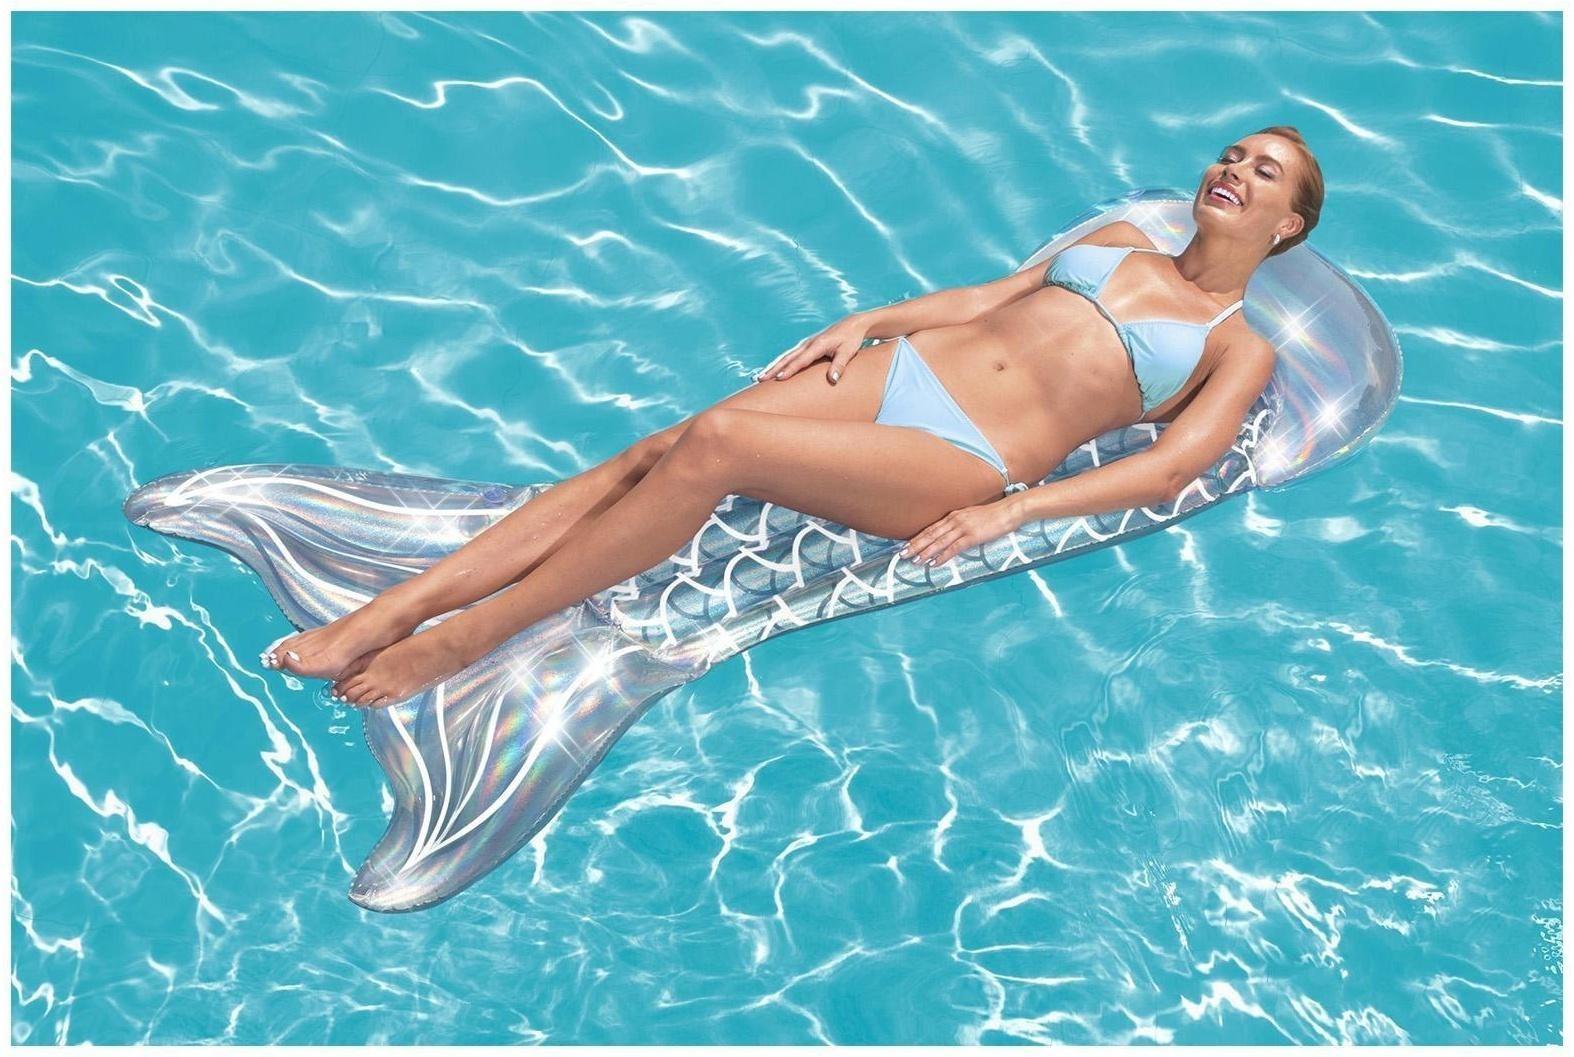 Матрас надувной для плавания «Хвост русалки», 193 x 101 см, 43413 Bestway